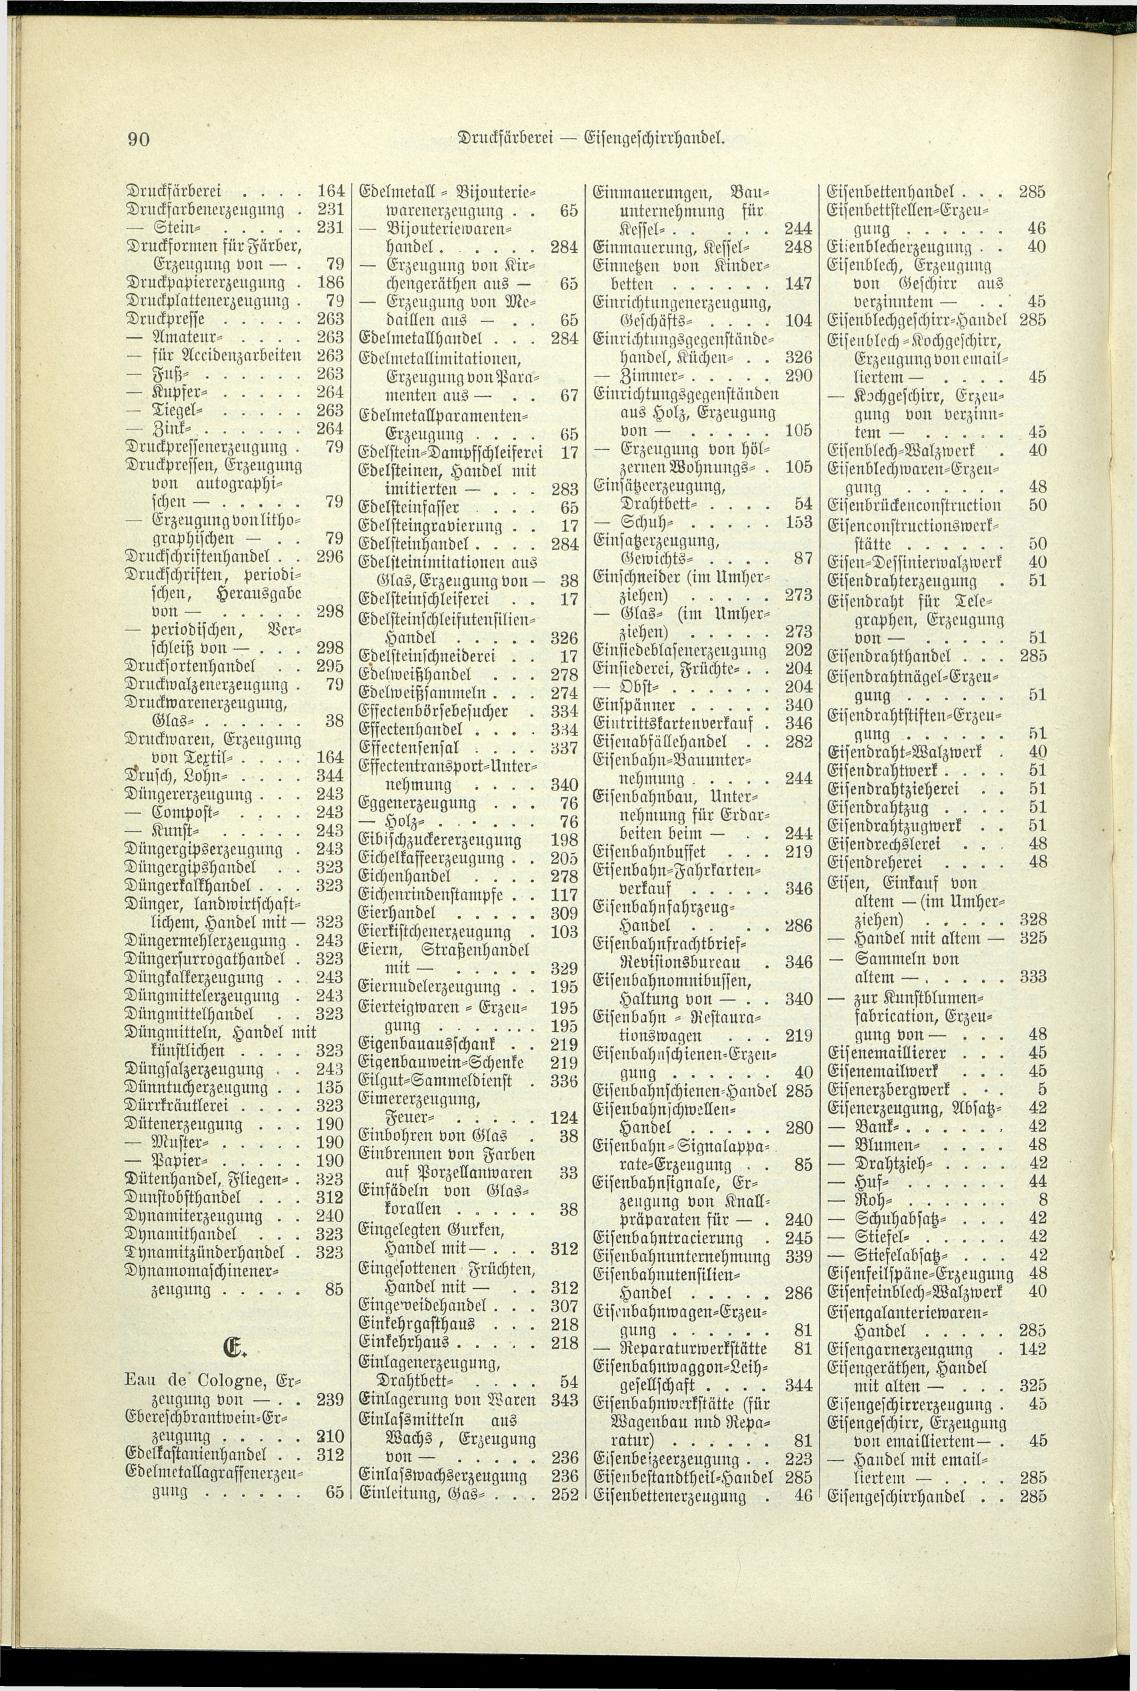 Verzeichnis der Gewerbe der im Reichsrathe vertretenen Königreiche und Länder 1900 - Seite 94